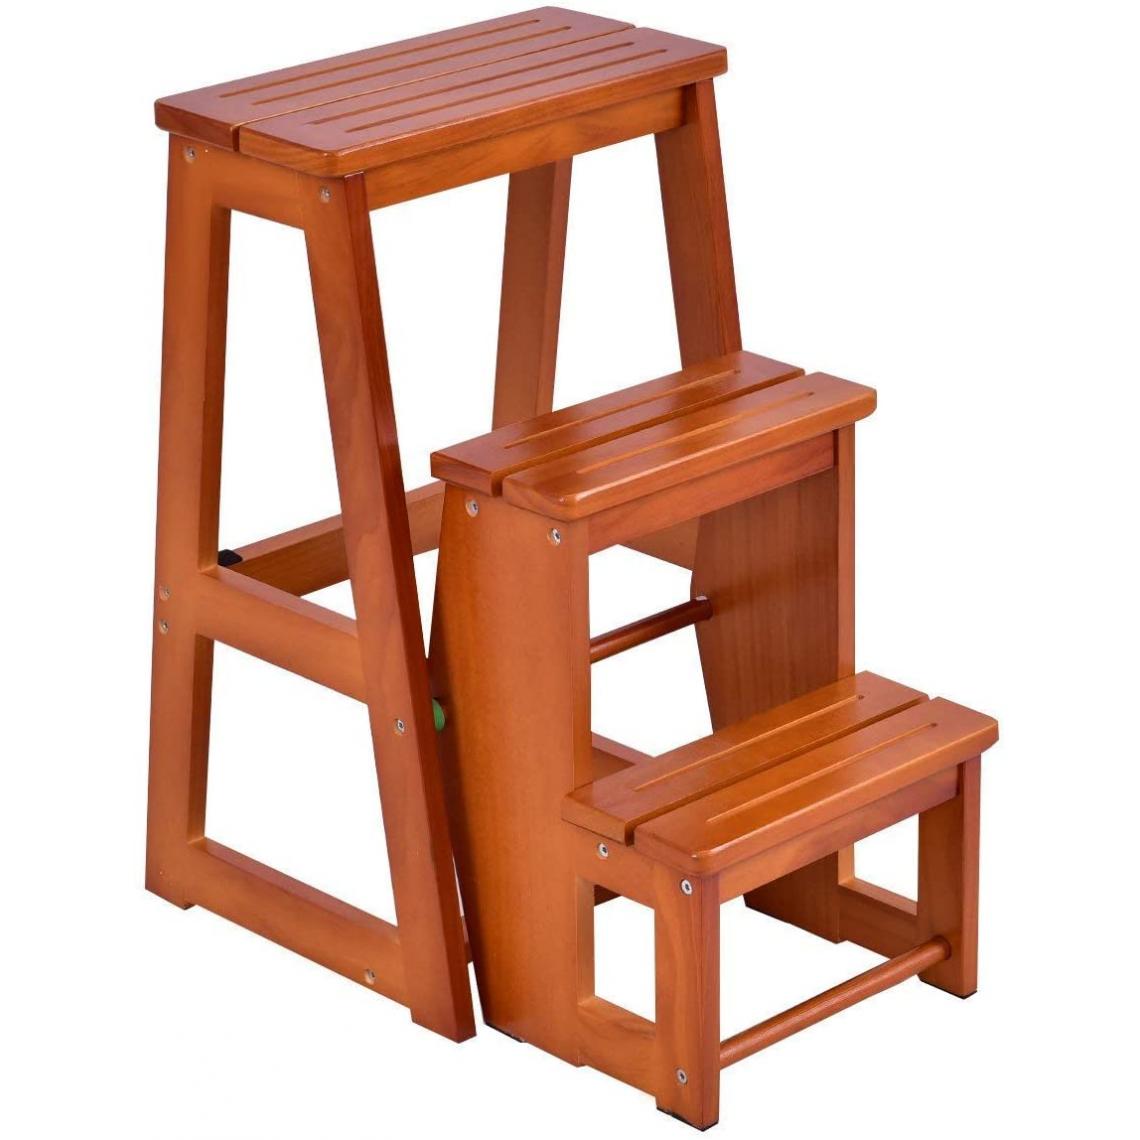 GIANTEX - GIANTEX Tabouret Escalier en bois Tabouret de chaise pliante Échelle de 3 niveaux Multifonctionnel - Chaises